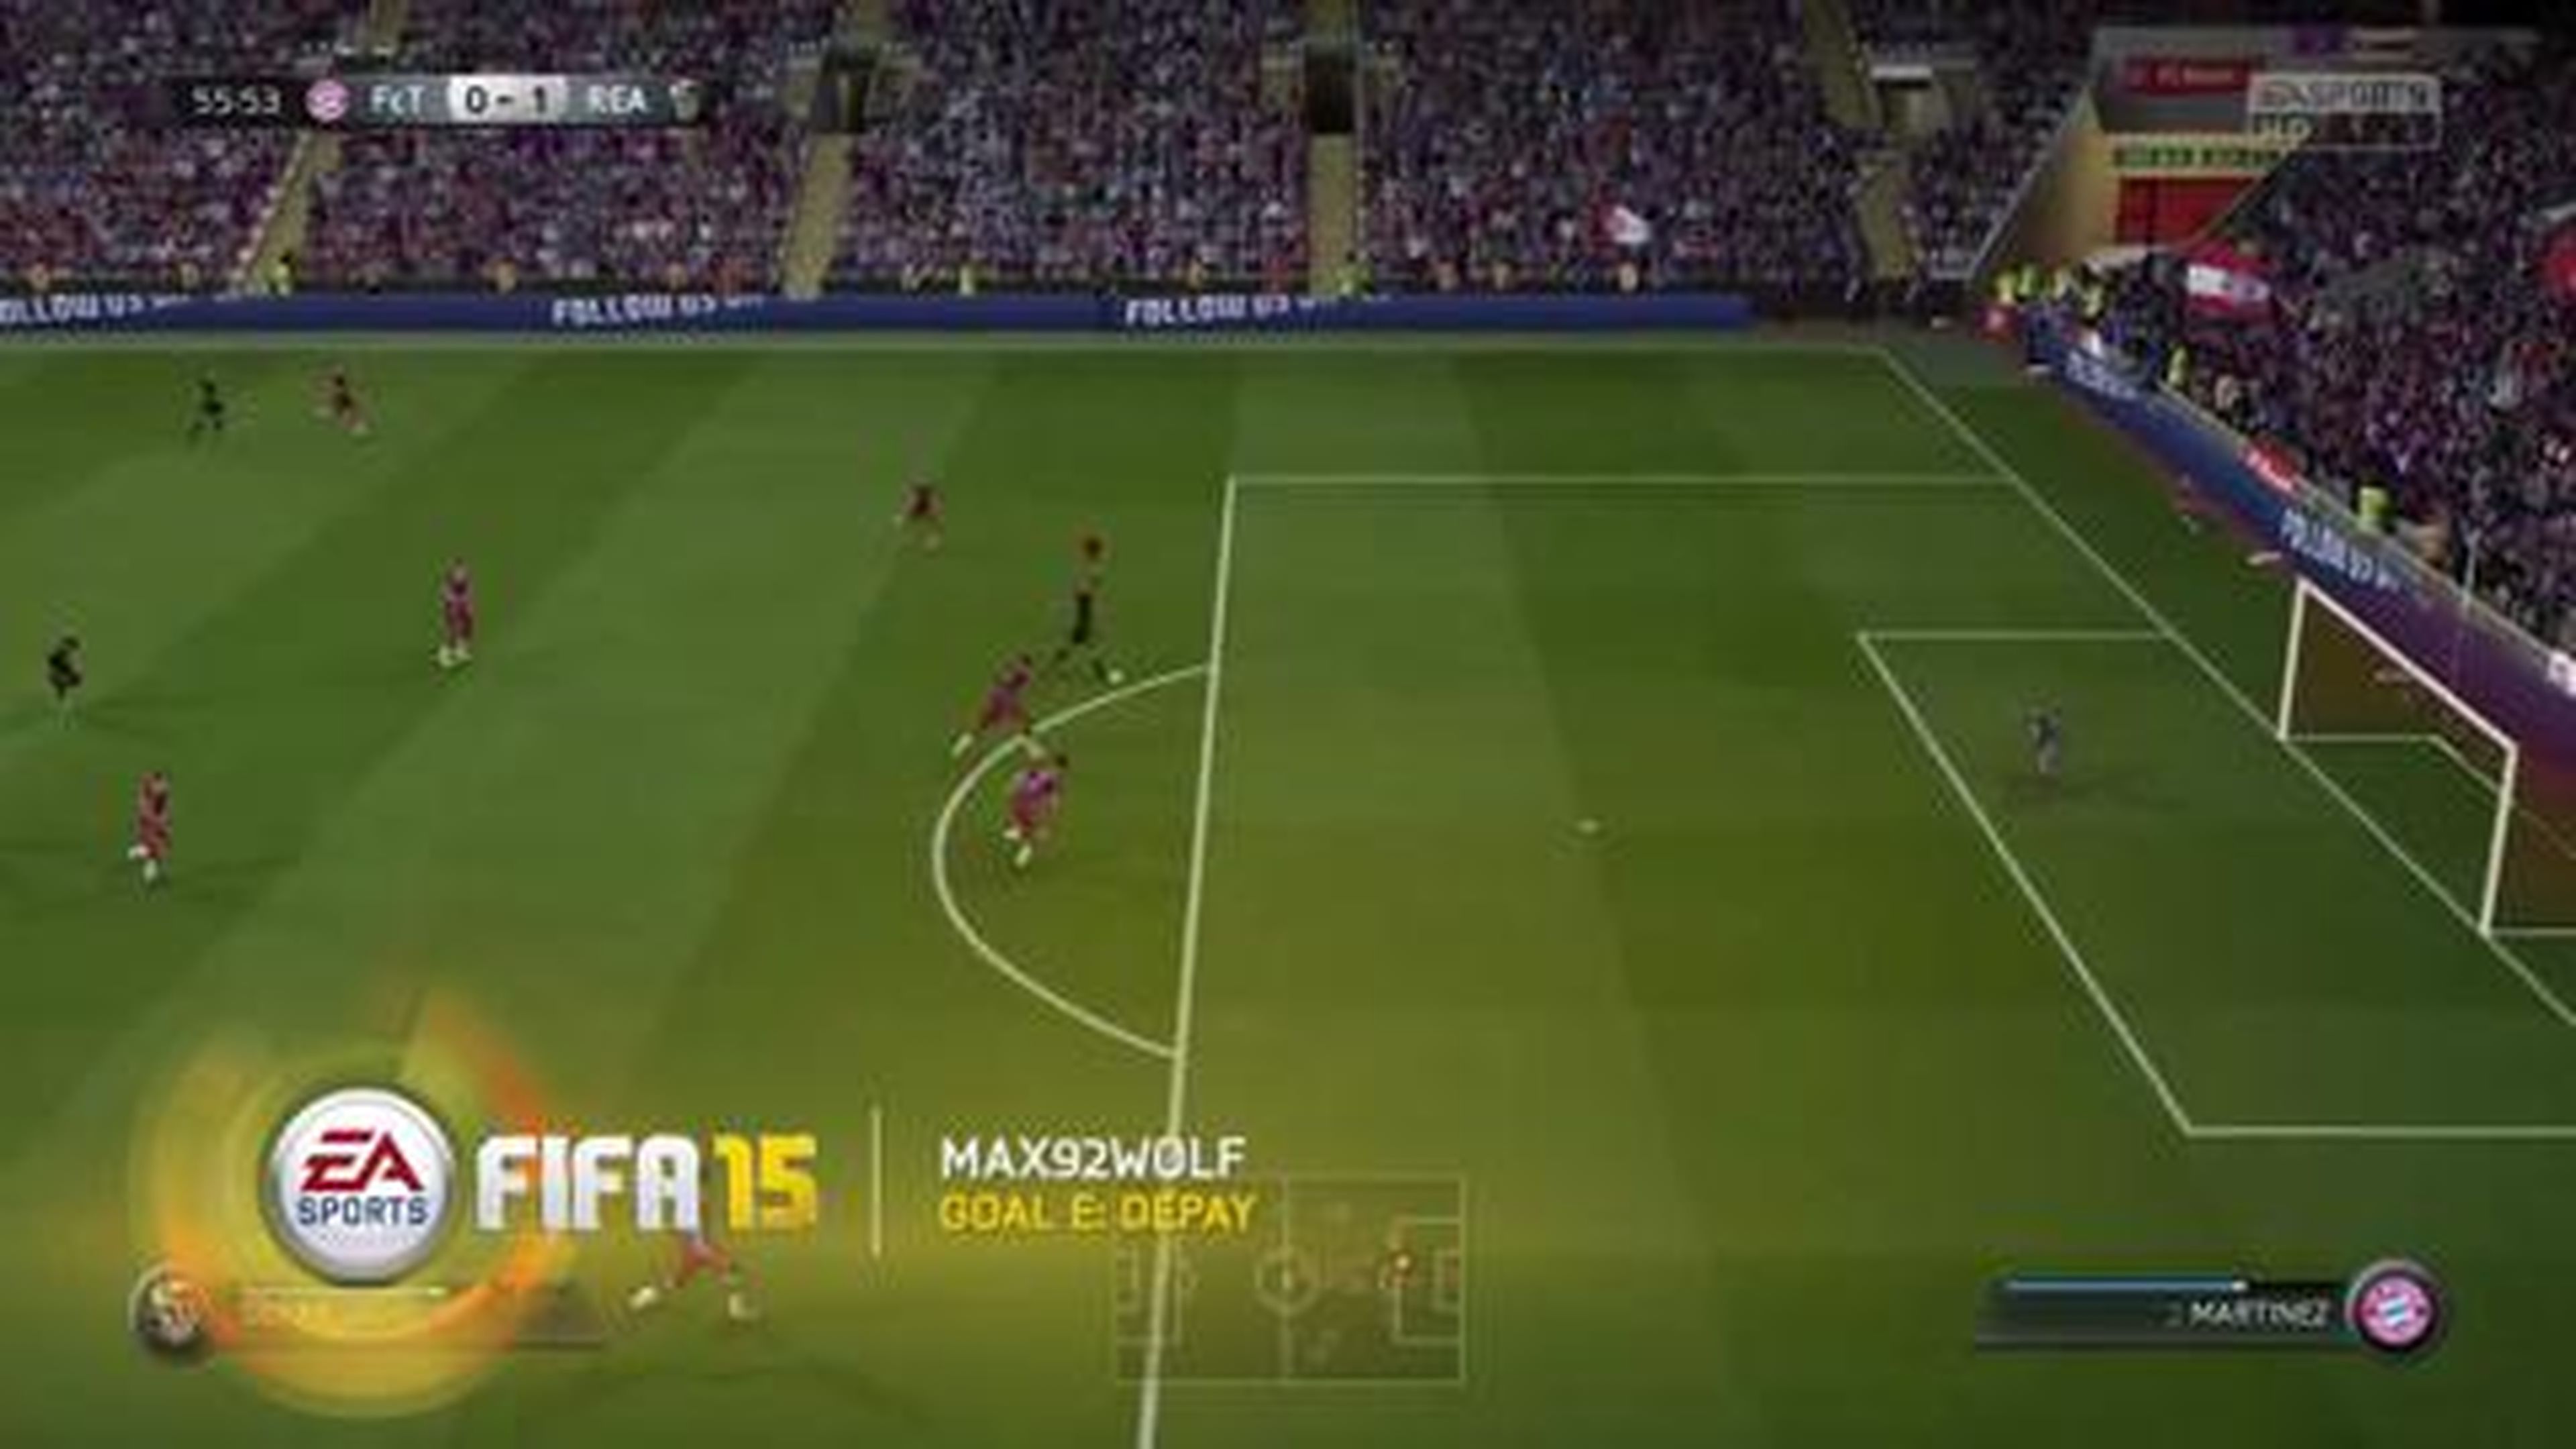 FIFA 15 - Best Goals of the Week - Round 11